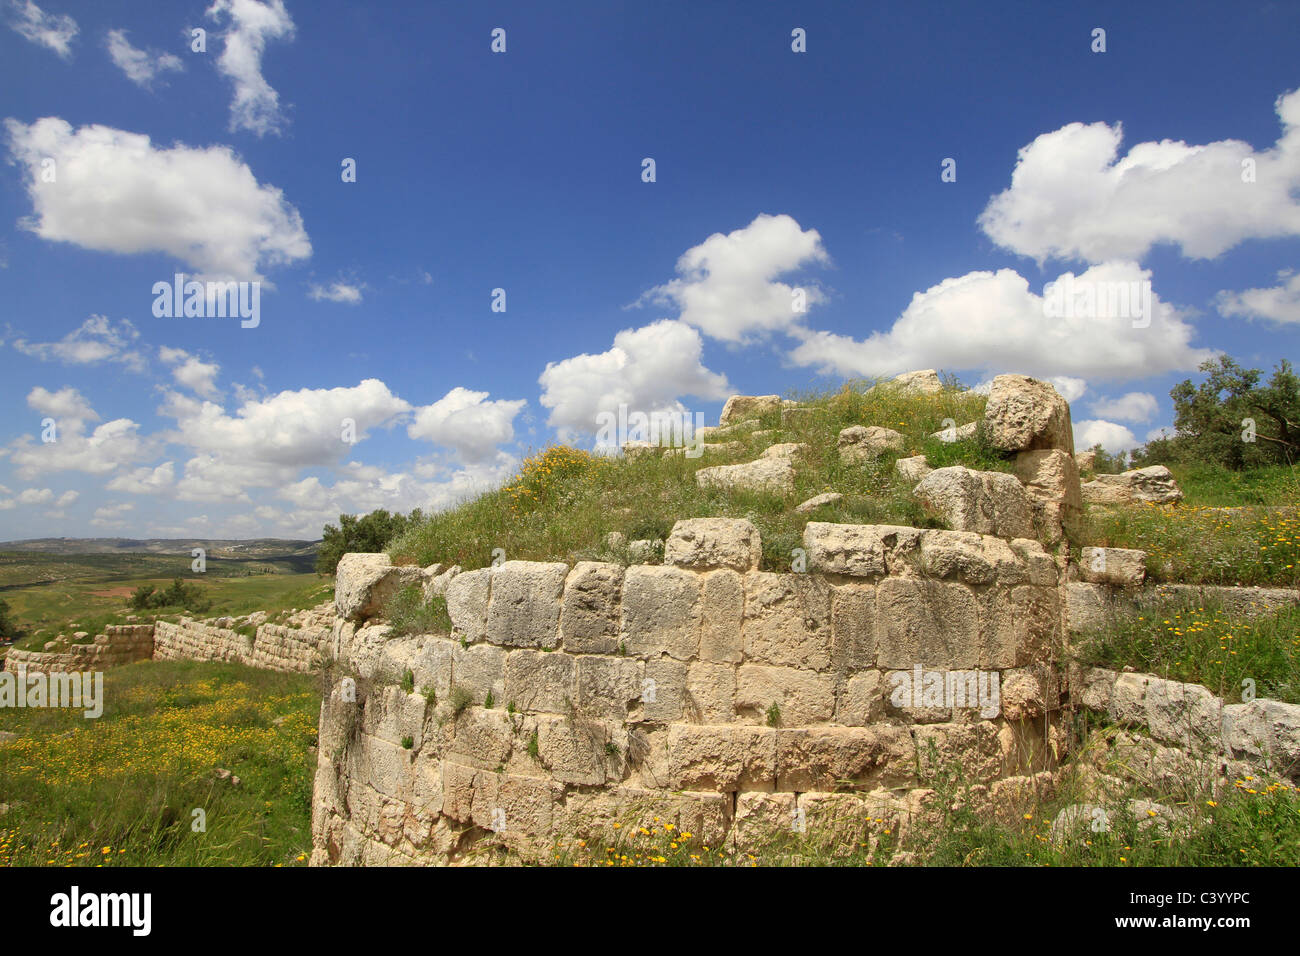 La Samarie, Sebastia, la porte Ouest de la ville romaine Sebaste, construit par le roi Hérode au 2ème siècle A.D. Banque D'Images